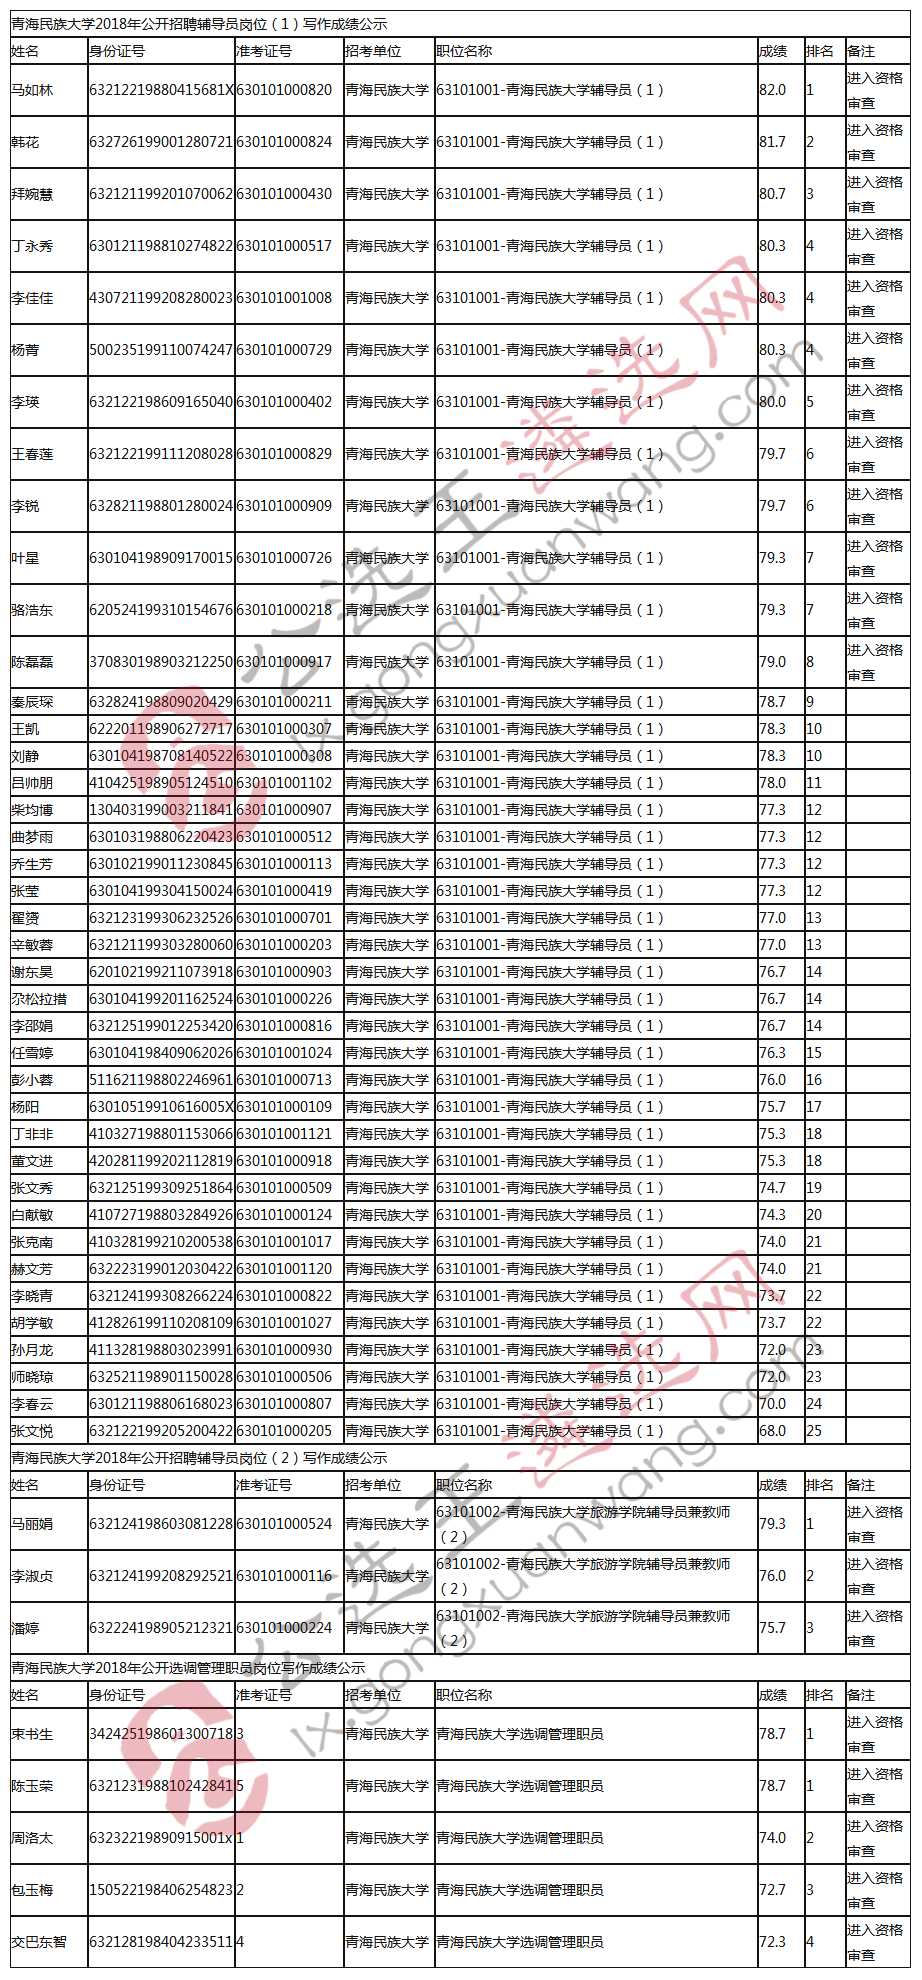 青海民族大学2018年公开招聘辅导员、公开选调管理职员写作成绩名单.jpg